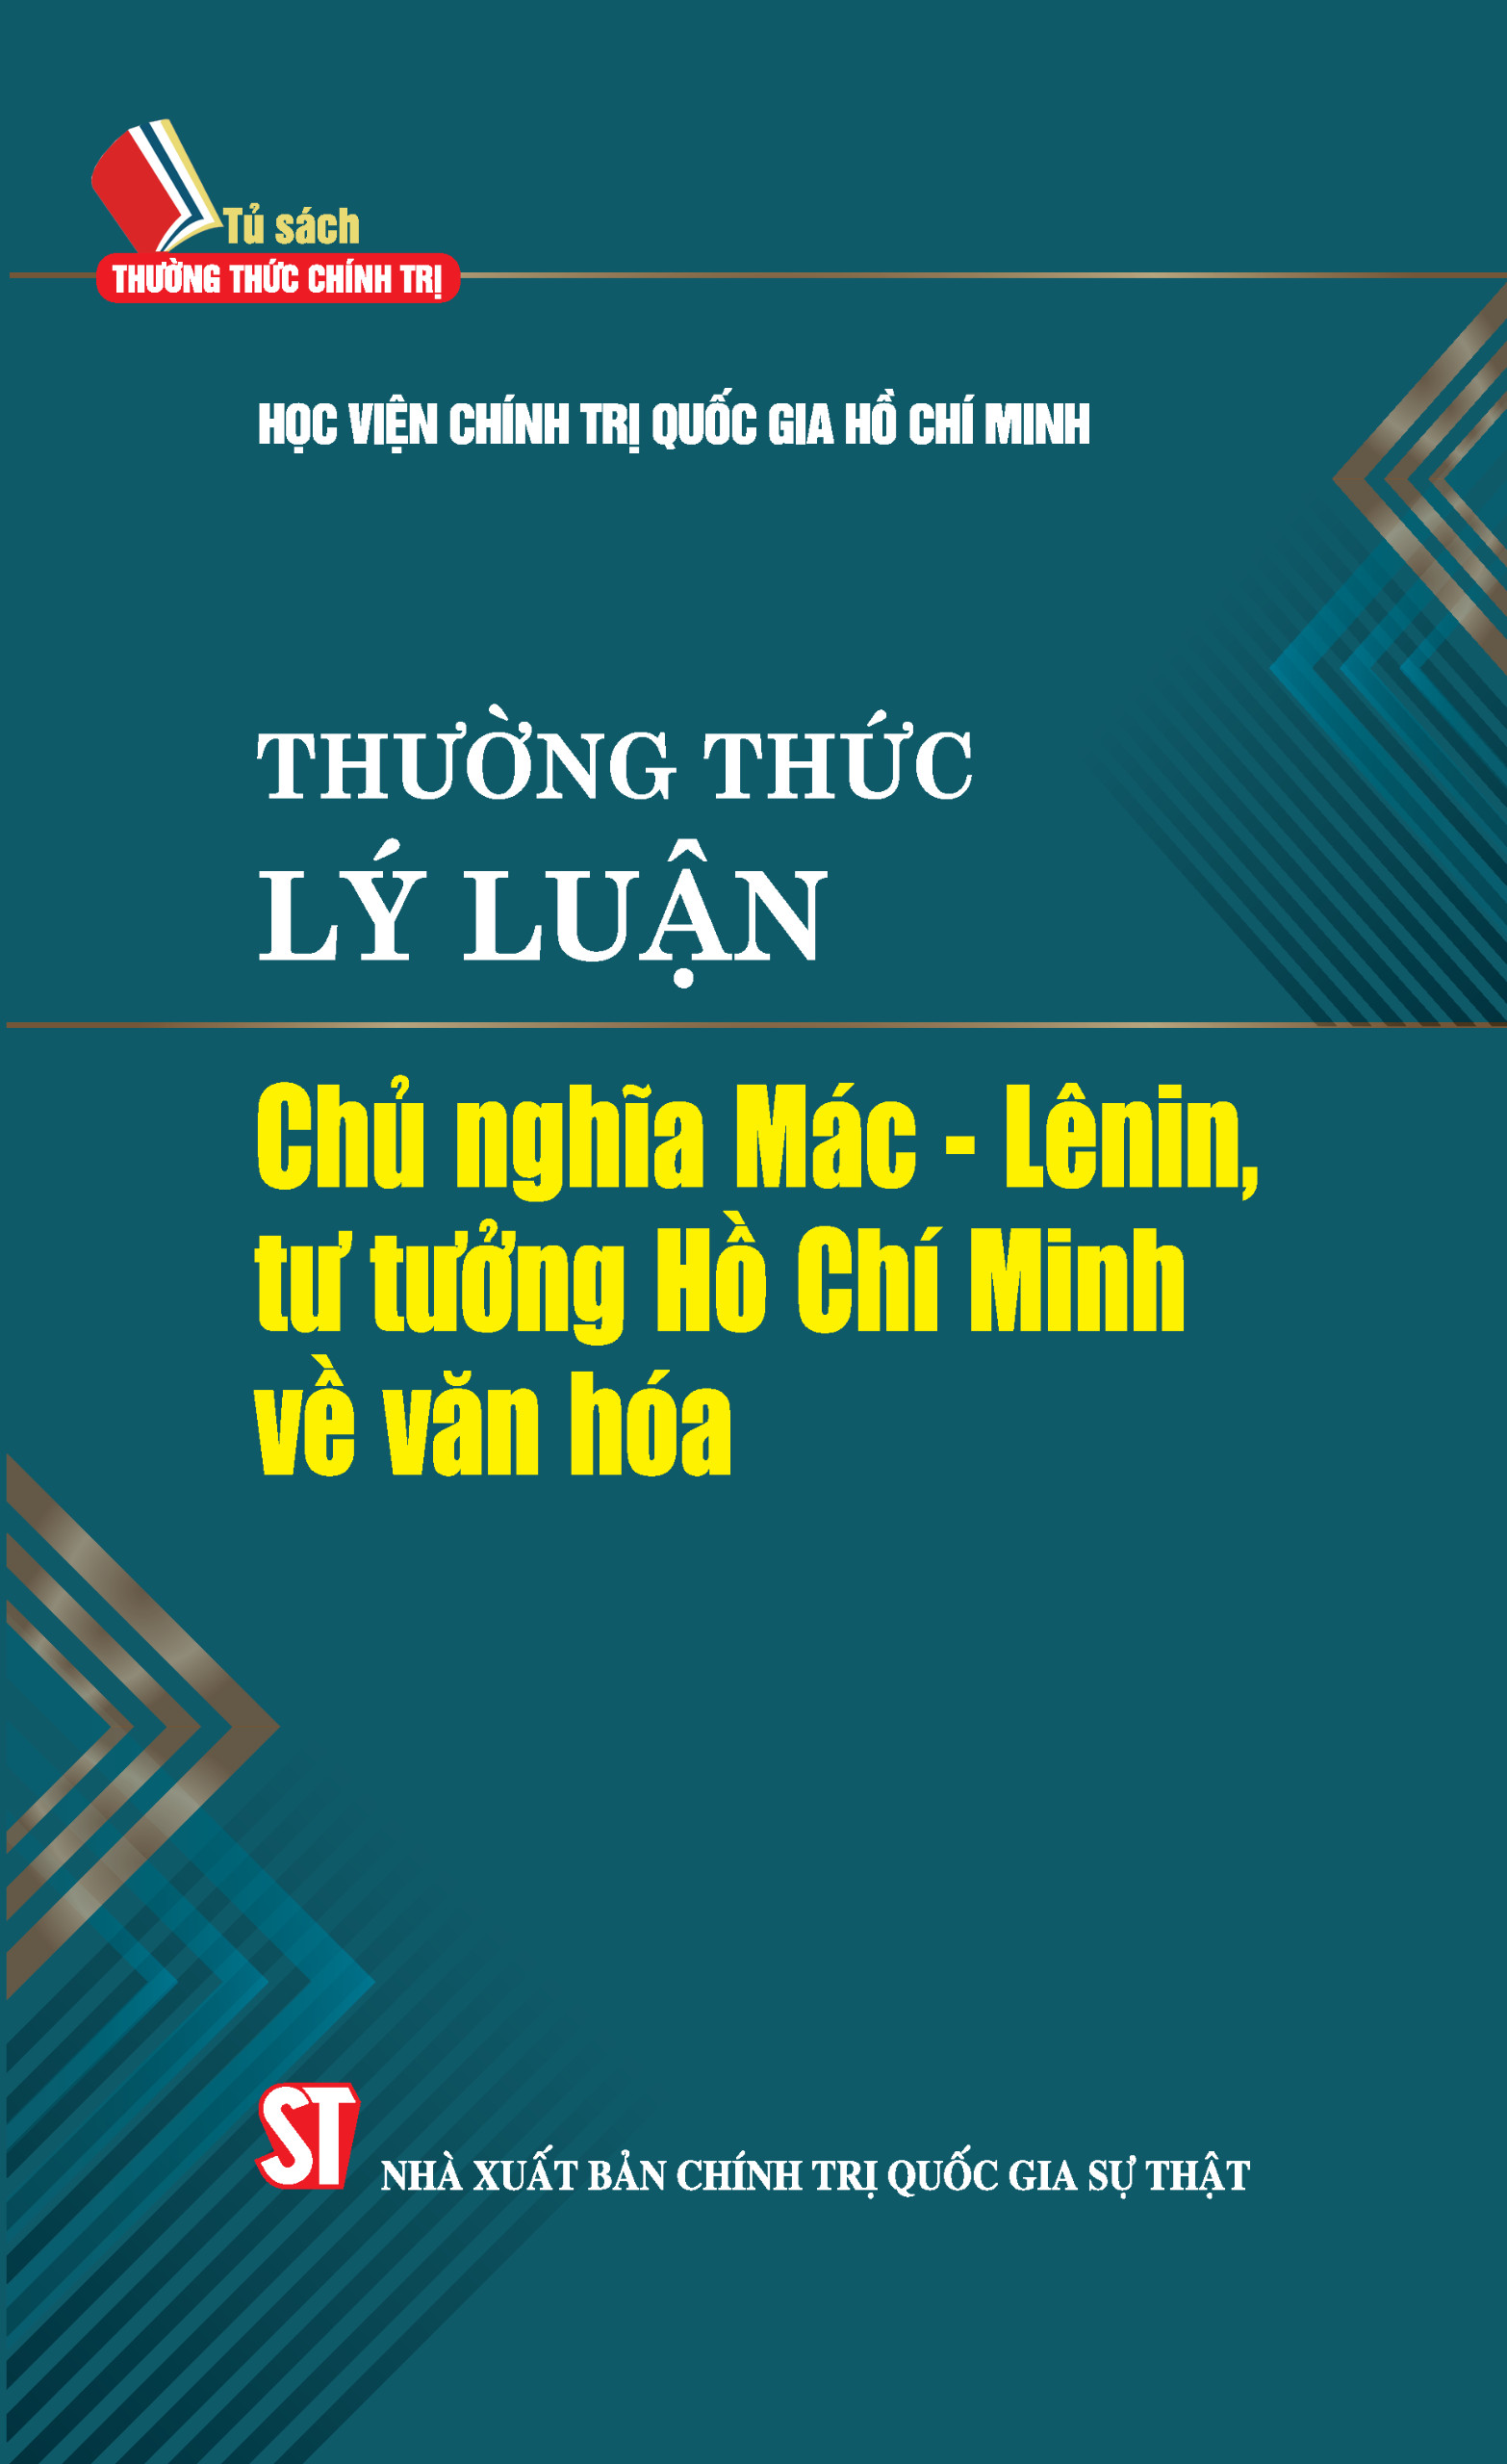 Thường thức lý luận Chủ nghĩa Mác – Lênin, tư tưởng Hồ Chí Minh về văn hóa